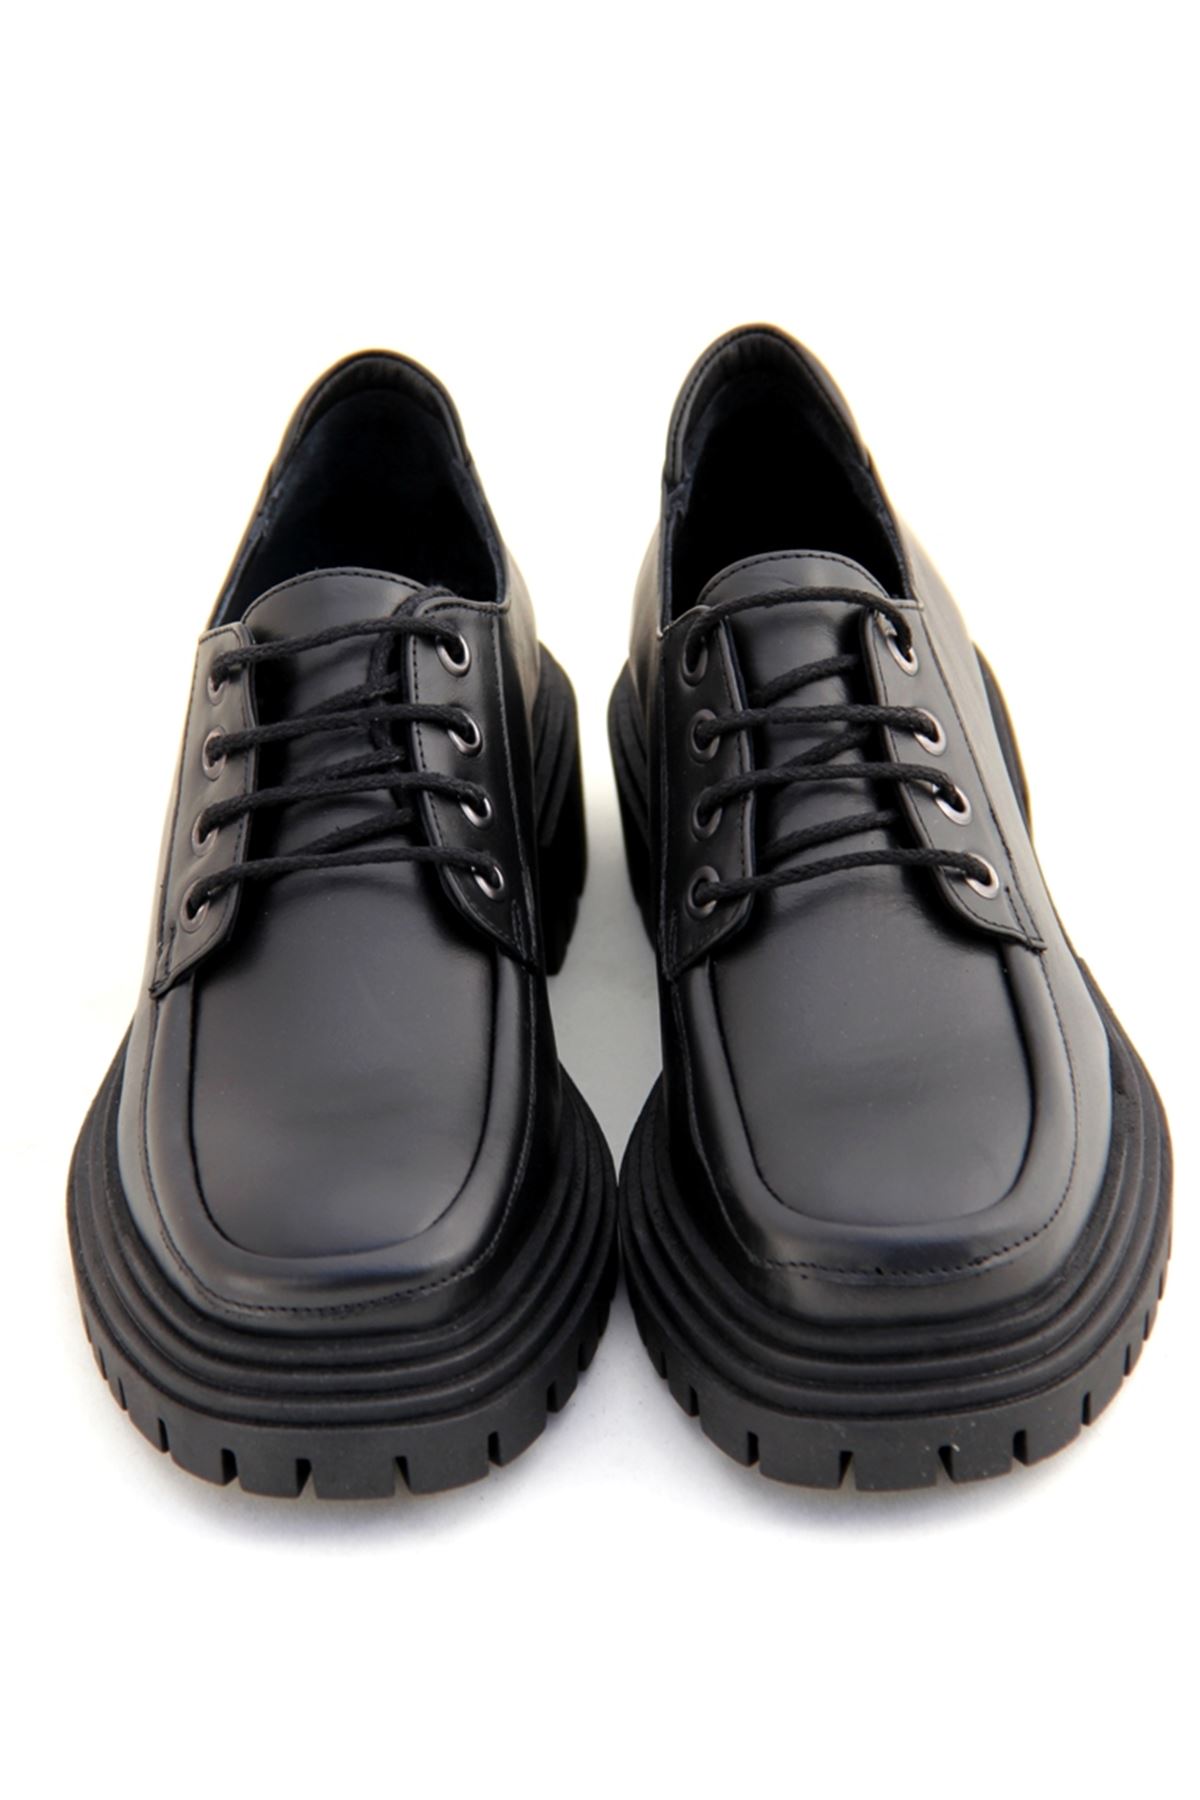 Albini 10955 Hakiki Deri Kadın Ayakkabı - Siyah